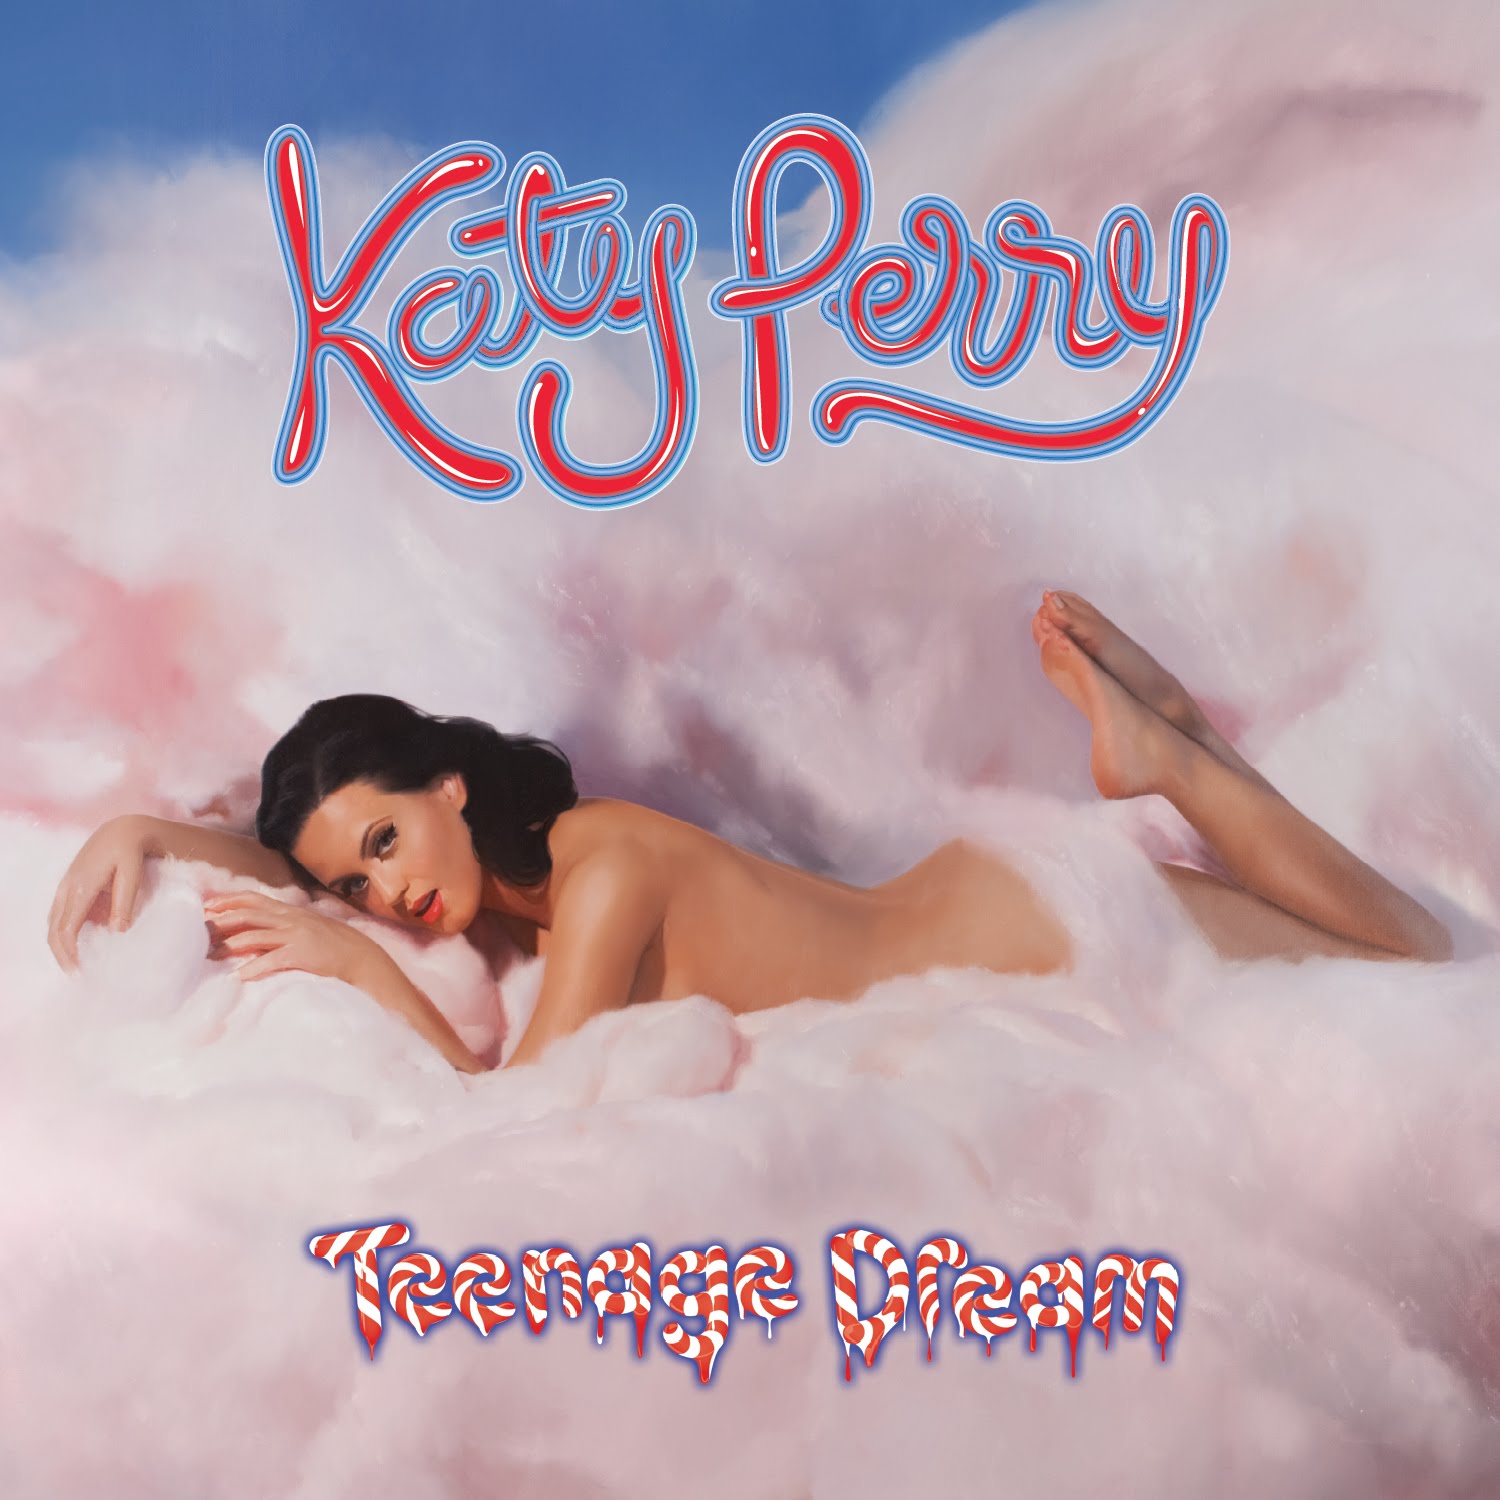 http://1.bp.blogspot.com/__kXuNu3oPq8/THju1zdbVII/AAAAAAAAAPo/jkPQ4nBdxwE/s1600/Katy-Perry-Teenage-Dream-Official-Album-Cover-Deutsch-Edition.jpg